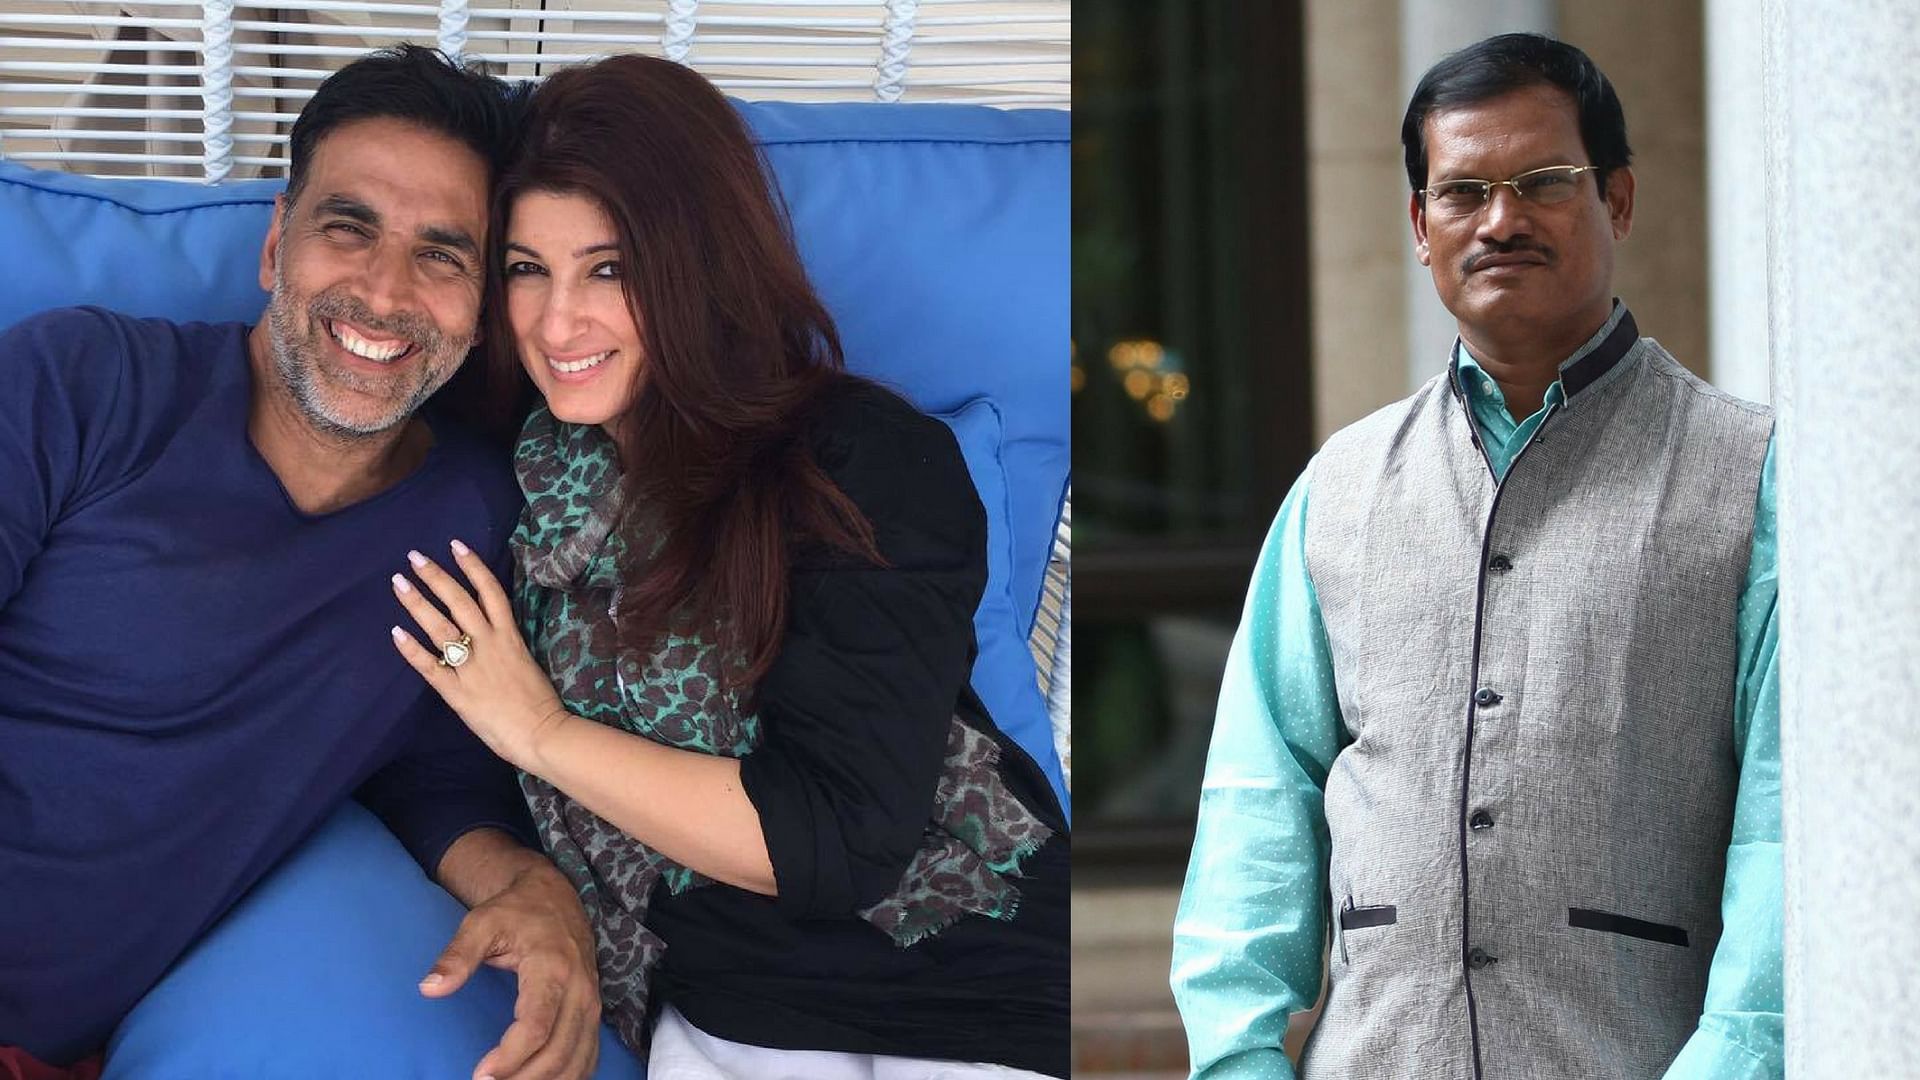 Akshay Kumar with Twinkle Khanna (left) and Arunachalam Muruganantham (left). (Photo courtesy: Facebook)